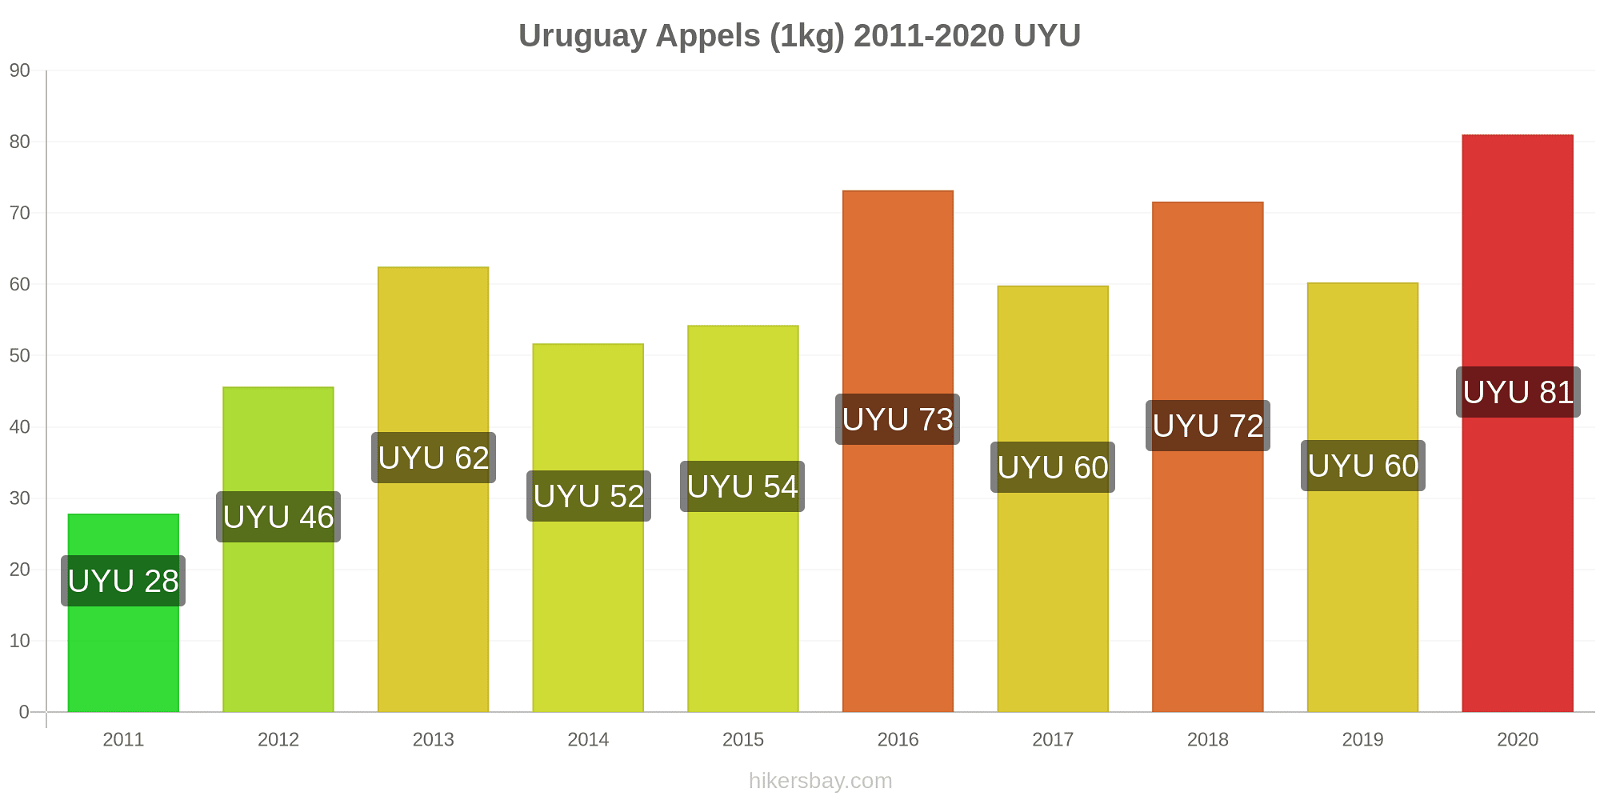 Uruguay prijswijzigingen Appels (1kg) hikersbay.com